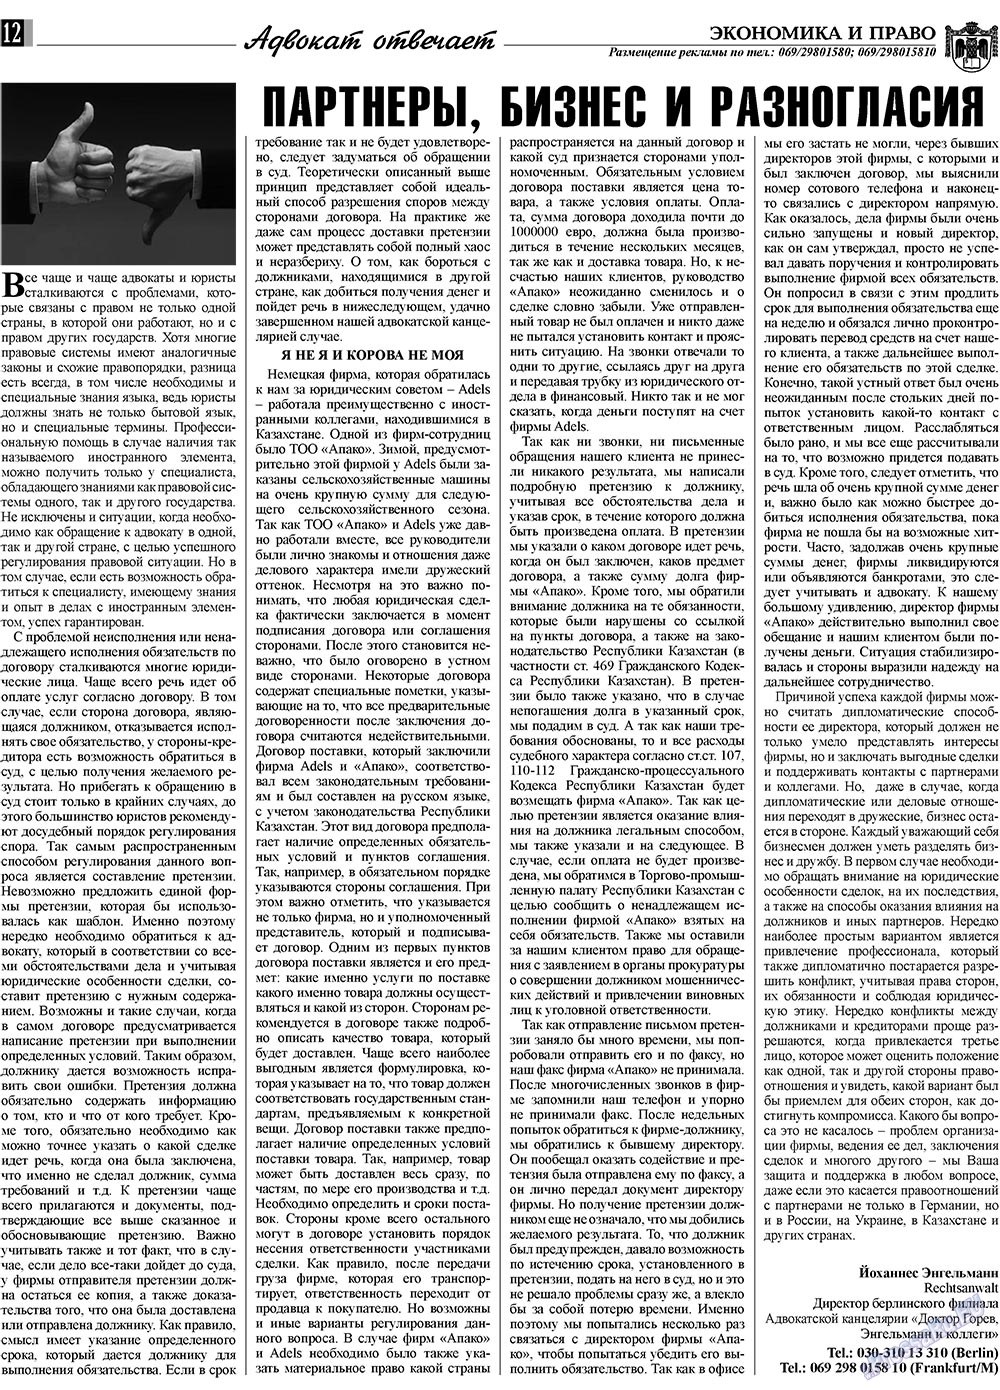 Экономика и право, газета. 2009 №6 стр.12